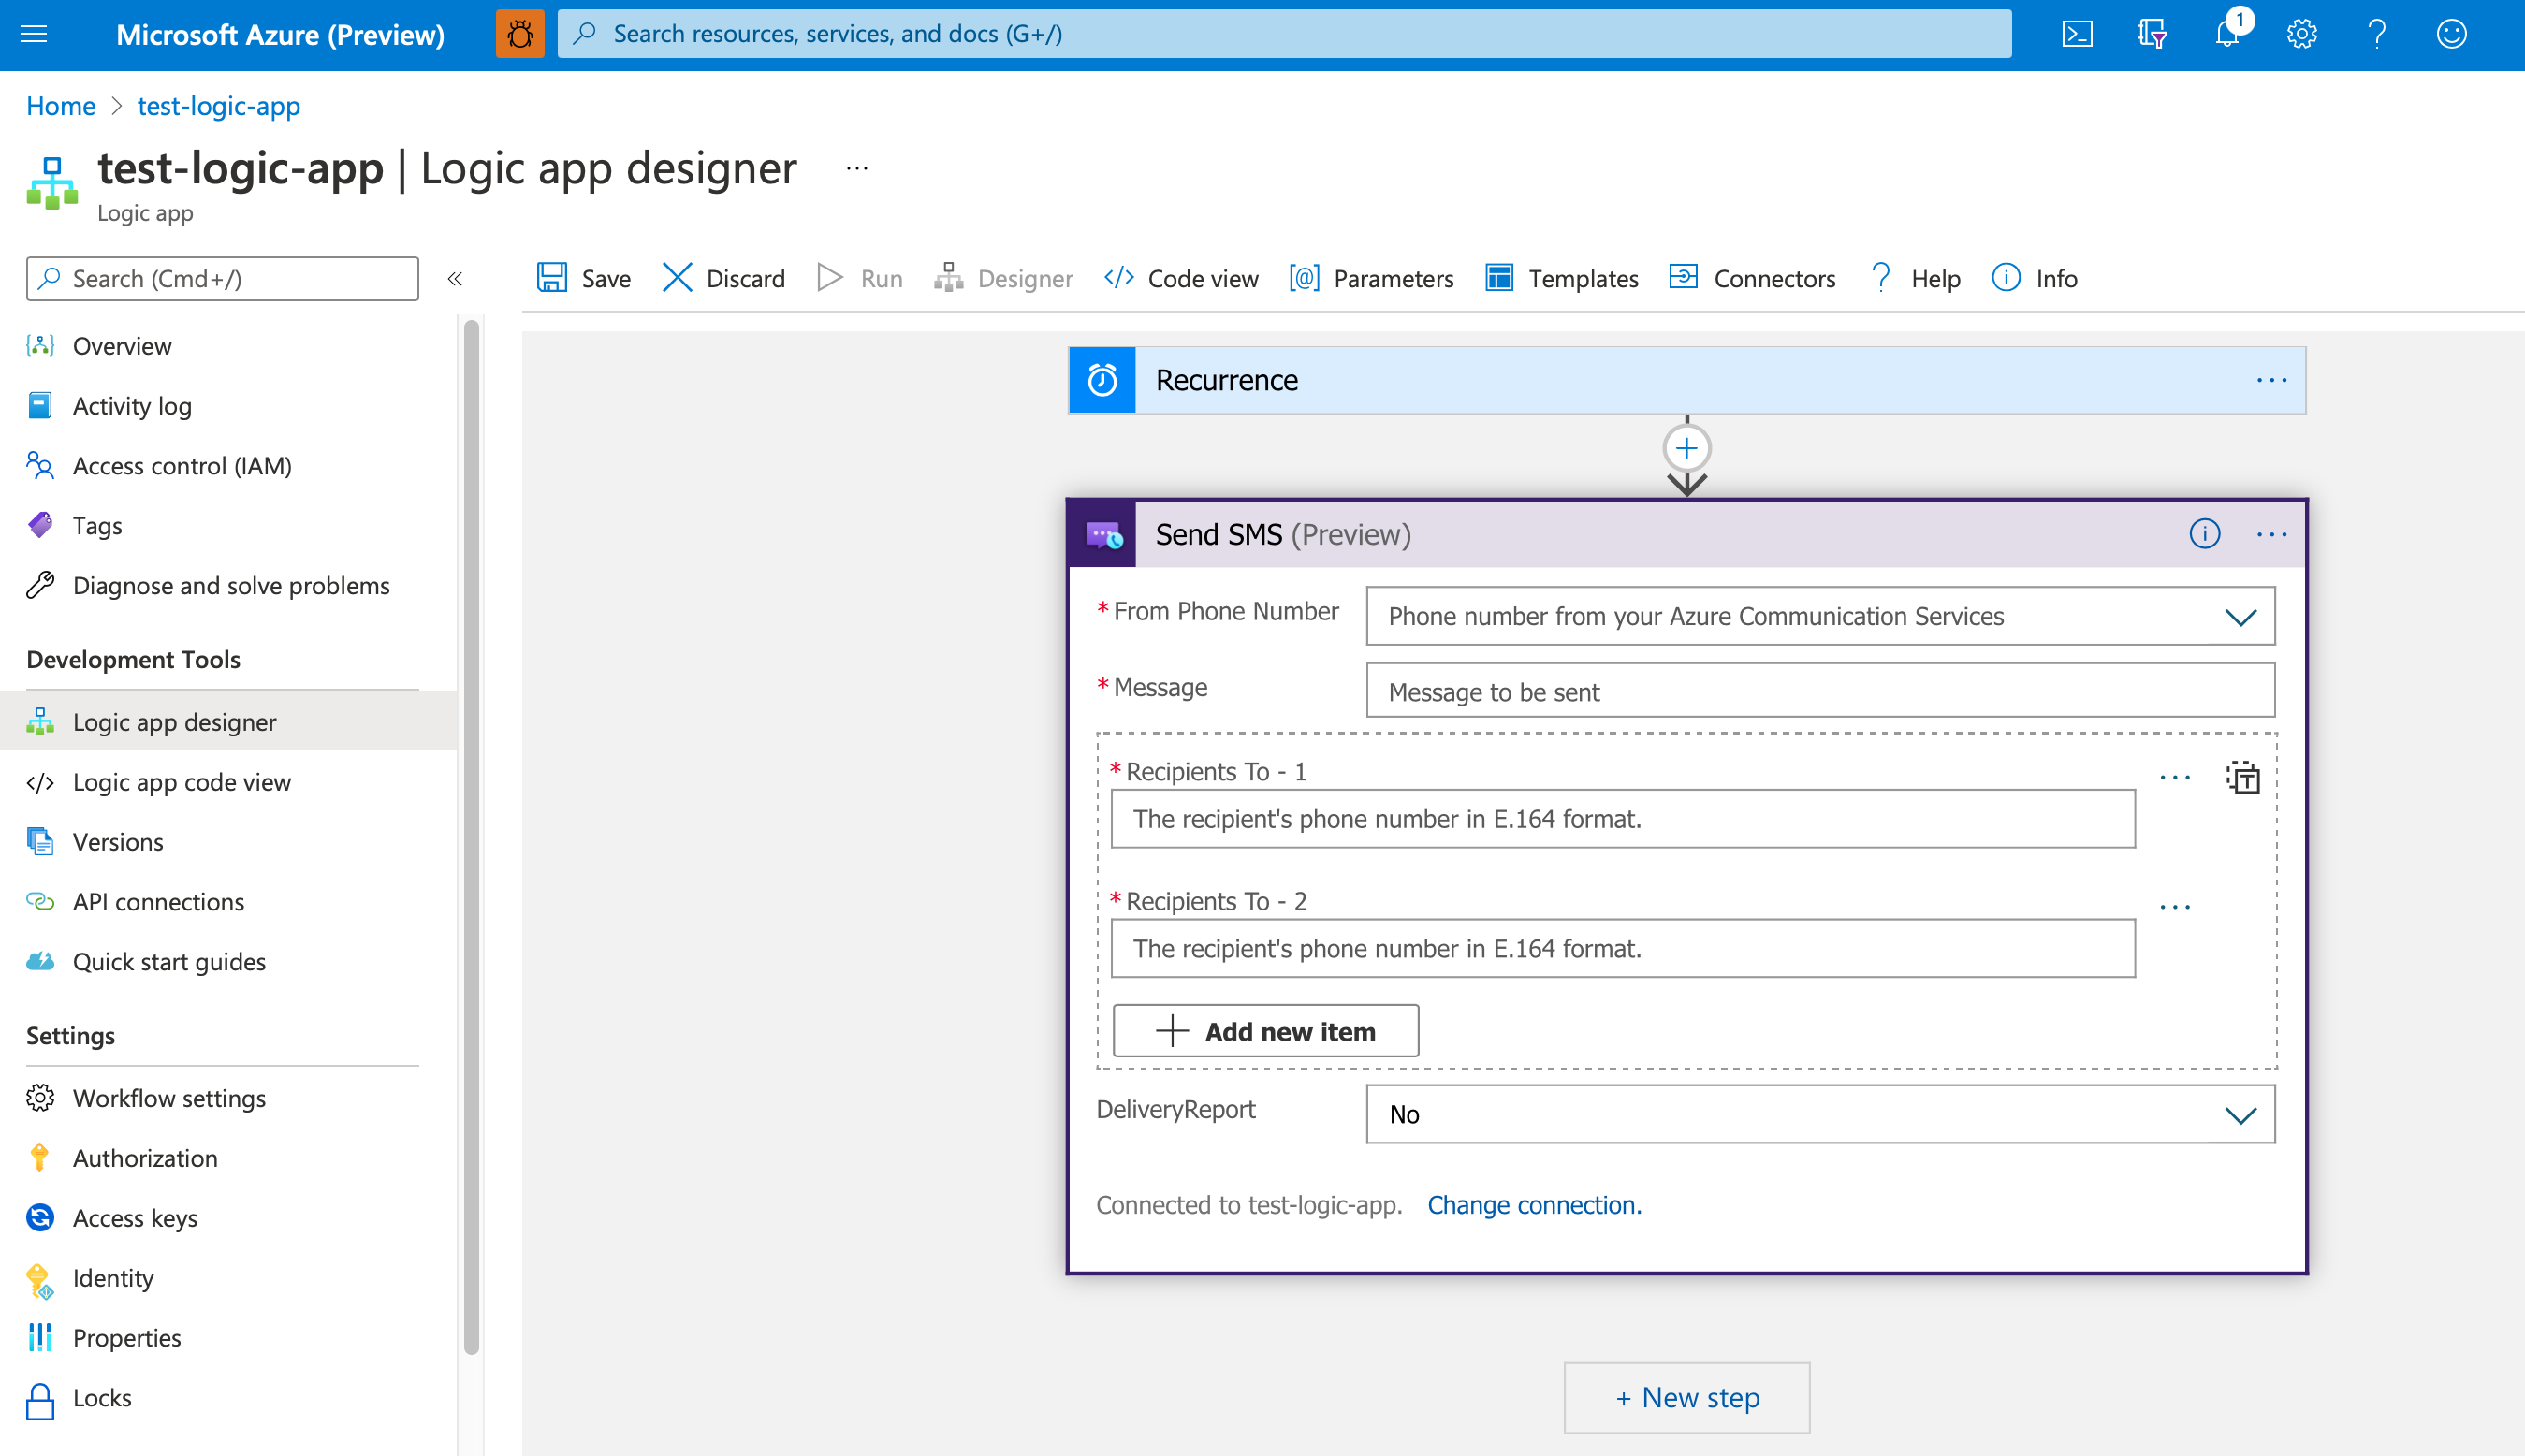 Képernyőkép a Logic App Designer számára megnyitott Azure Portalról, és egy példa logikai alkalmazásról, amely az Sms küldése műveletet használja az Azure Communication Services-összekötőhöz.